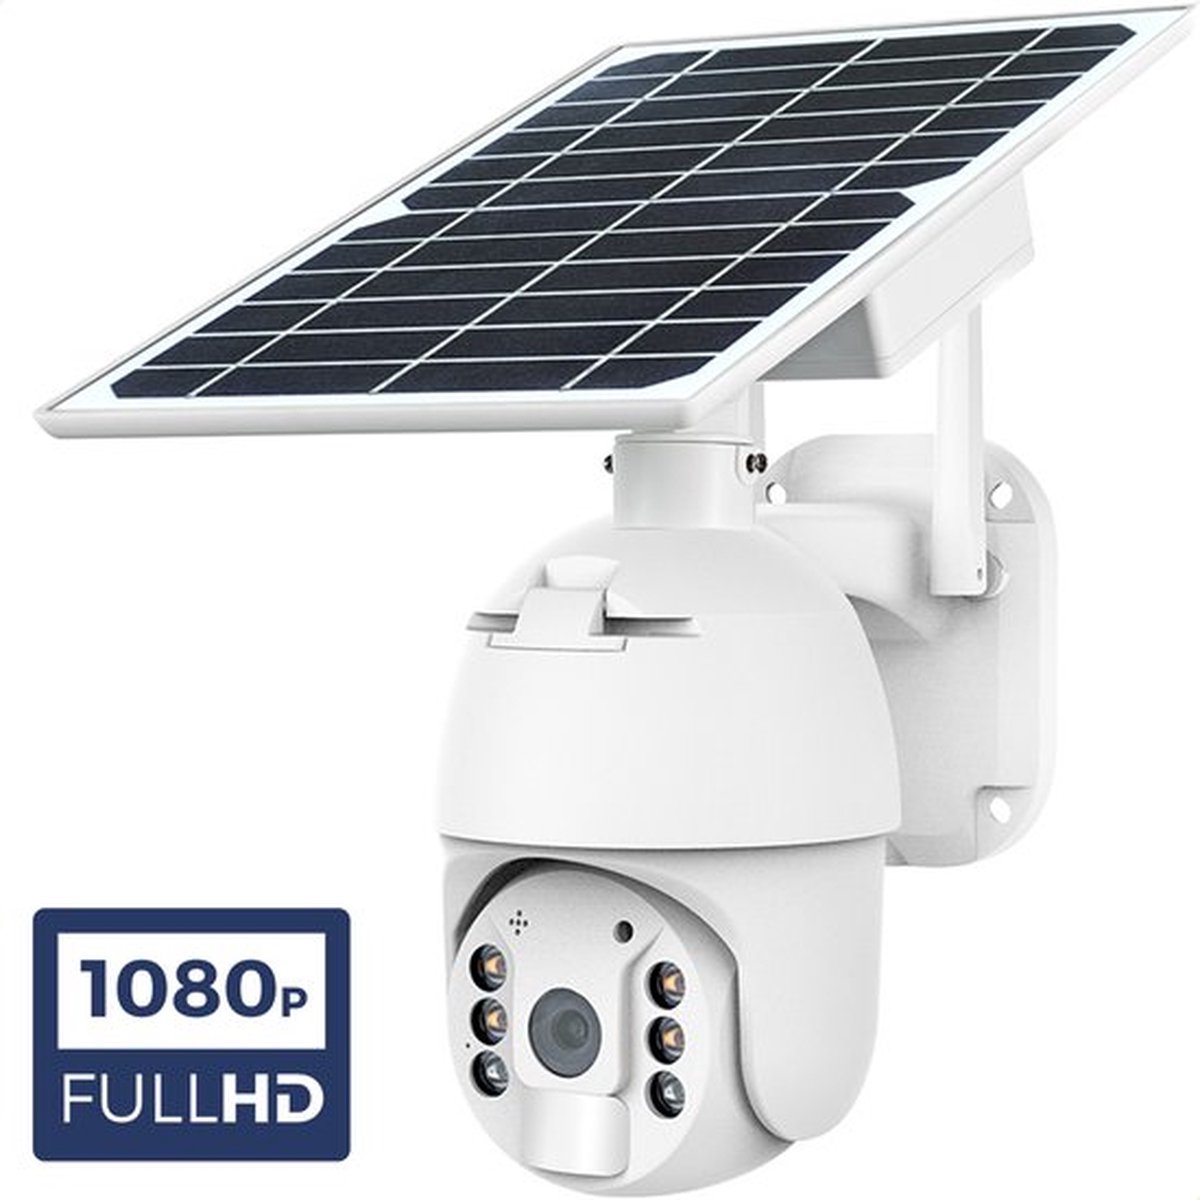 Outdoor Dome - Draadloze beveiligingscamera voor buiten op zonne-energie - incl. zonnepaneel - Solar Powered Smart Alarm PTZ Security Camera - Wit